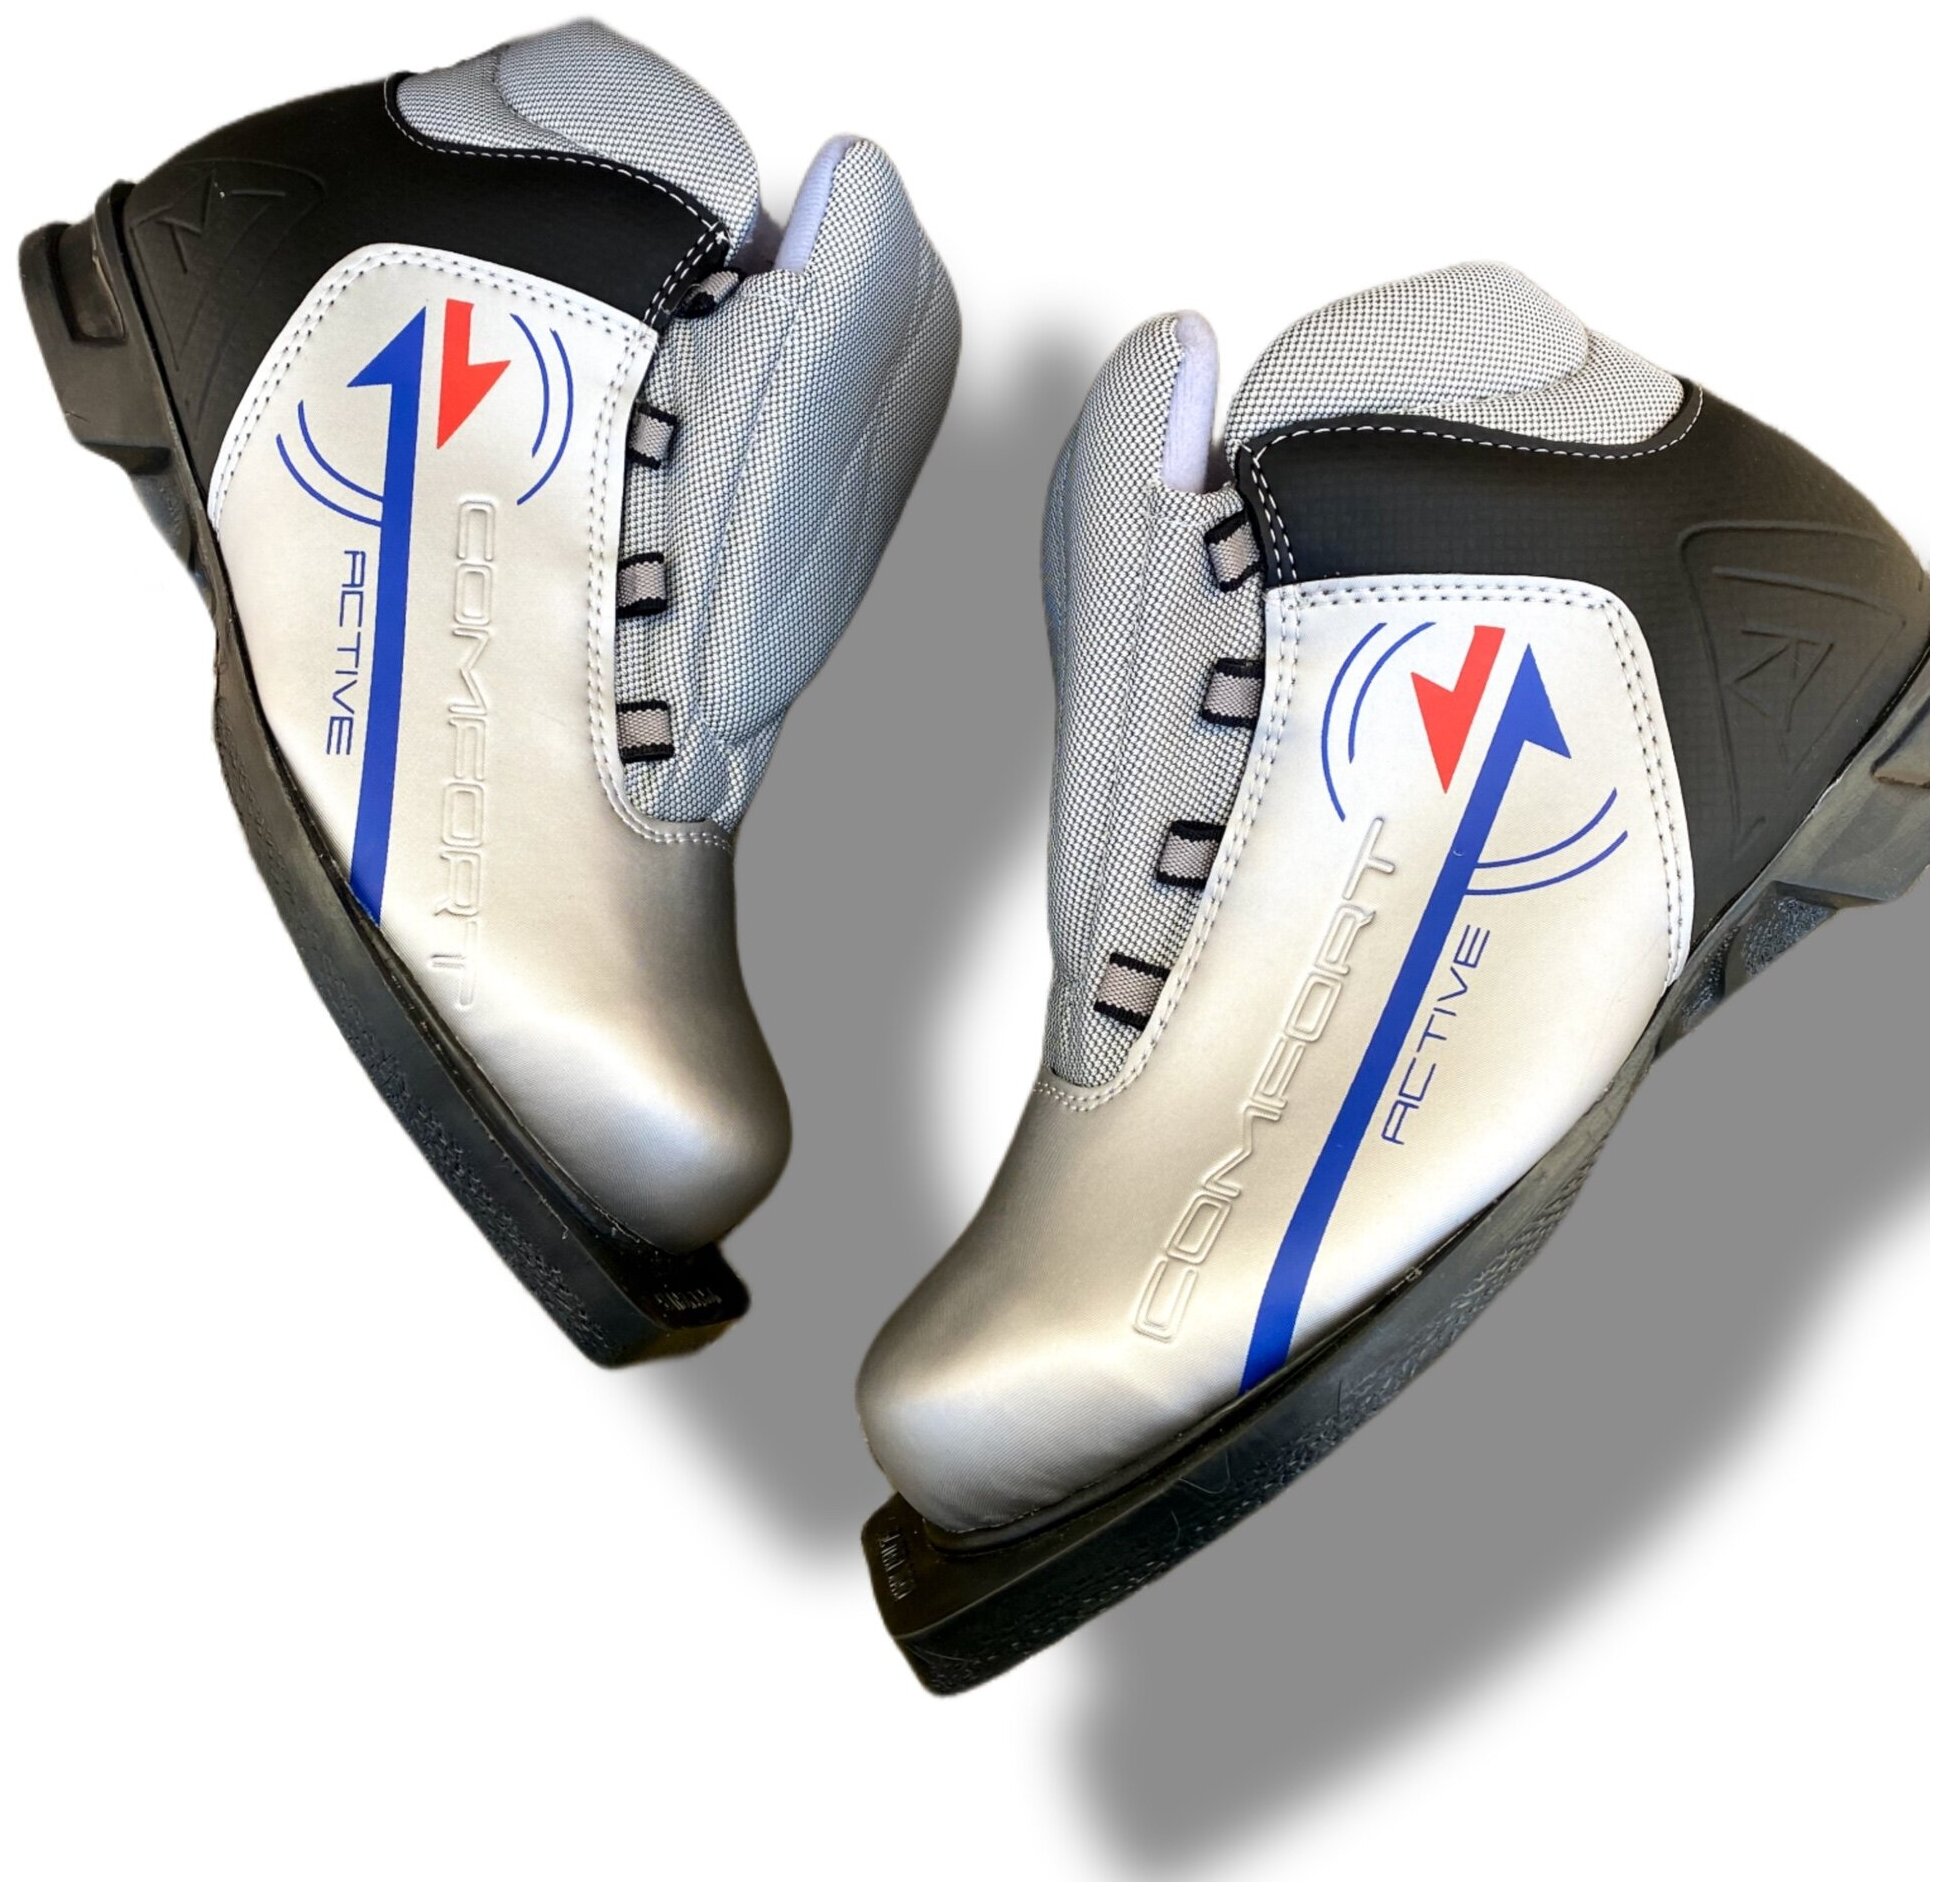 Ботинки лыжные TREK ActiveComfort NN75, цвет серебро-черный, лого синий, размер 40